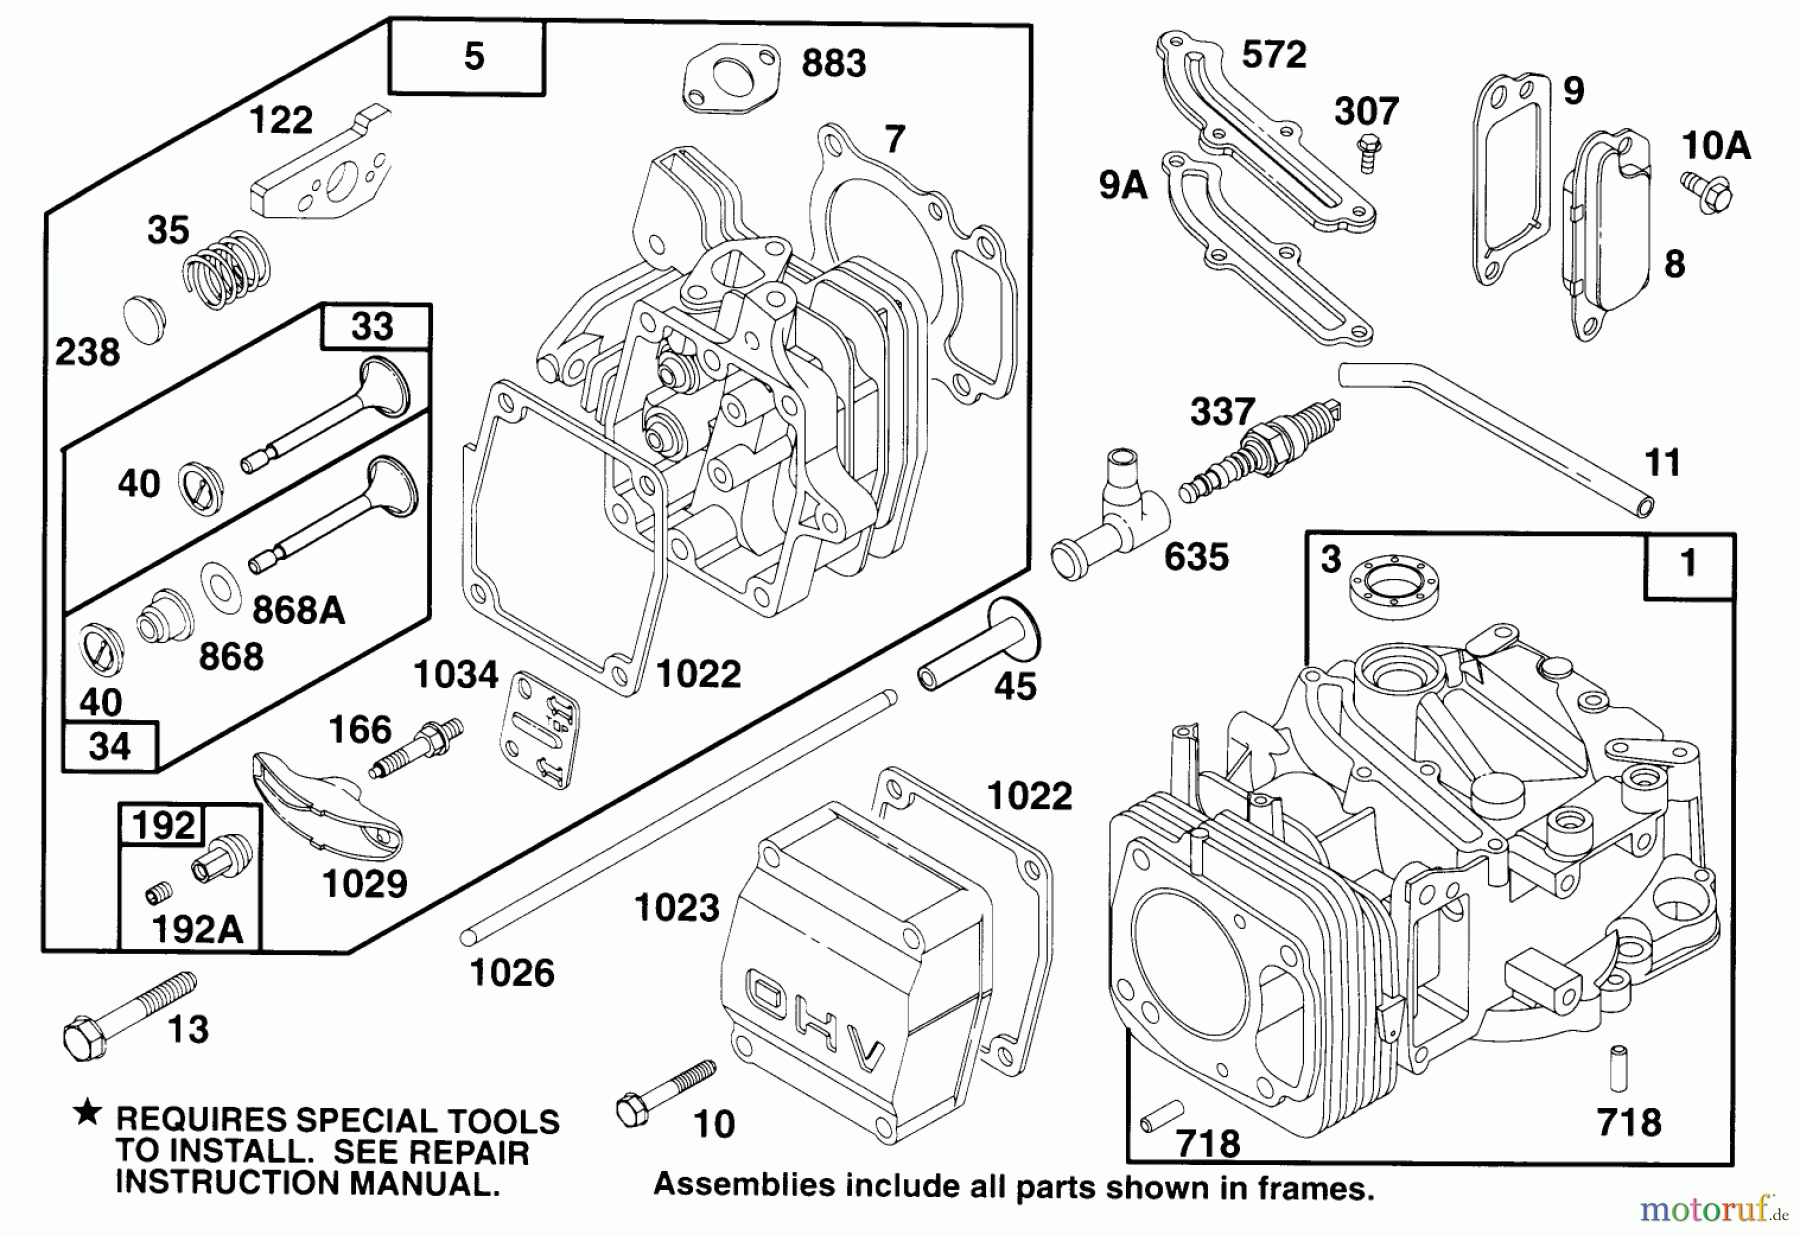  Toro Neu Mowers, Walk-Behind Seite 2 22151 - Toro Lawnmower, 1995 (5900001-5999999) ENGINE GTS 150 #1